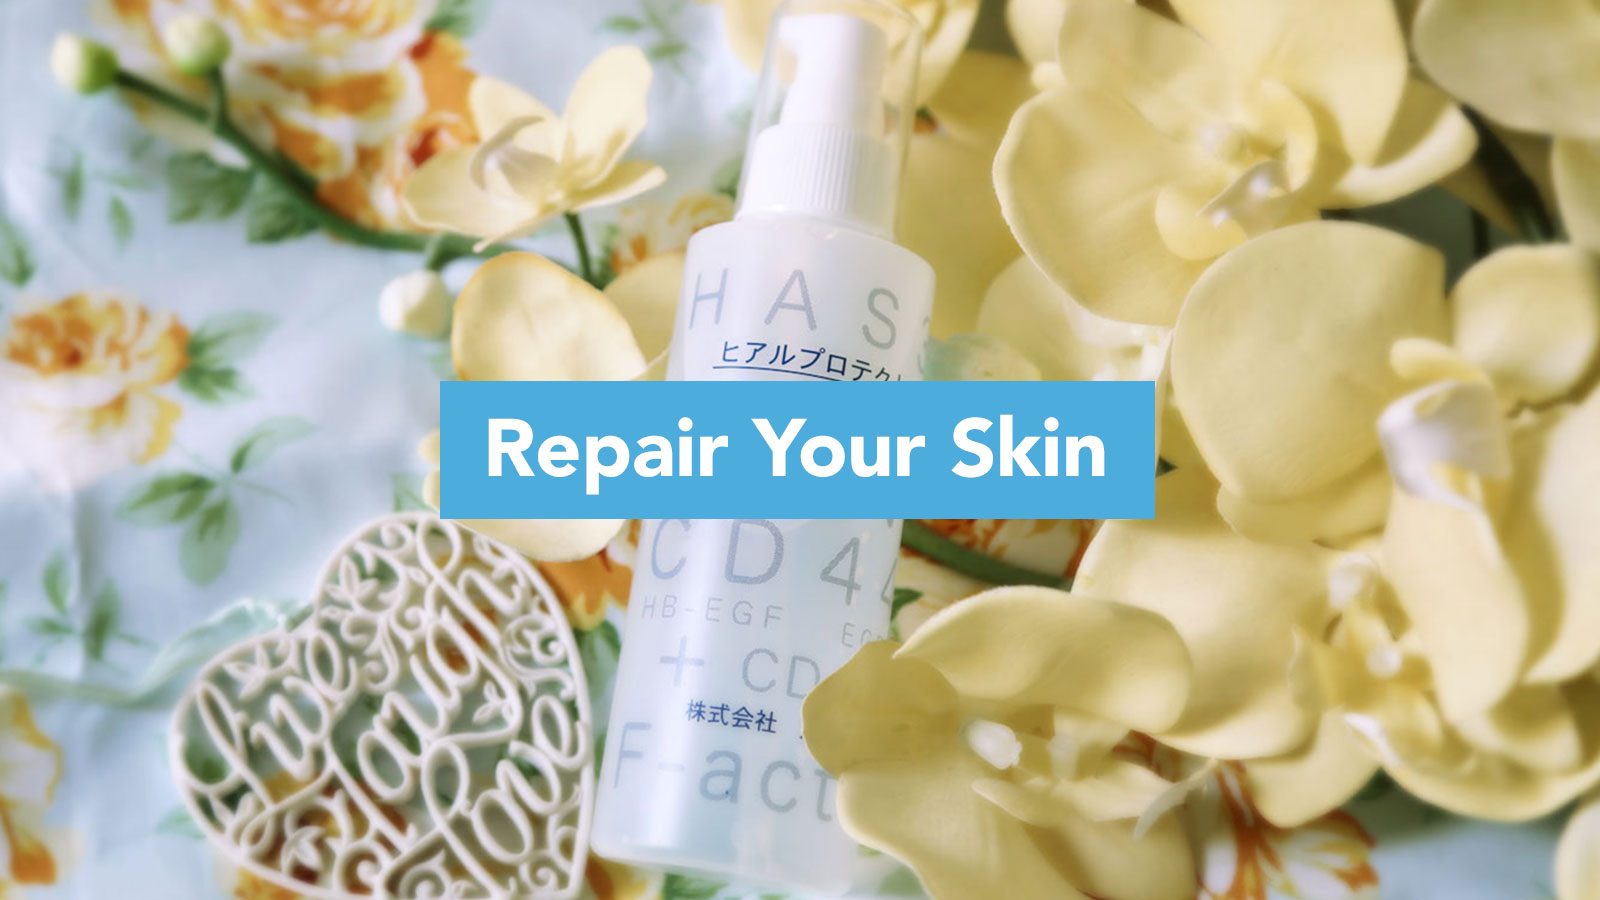 Dr. Fukaya Shop | Repair Your Skin | Skincare for sensitive, atopic skin